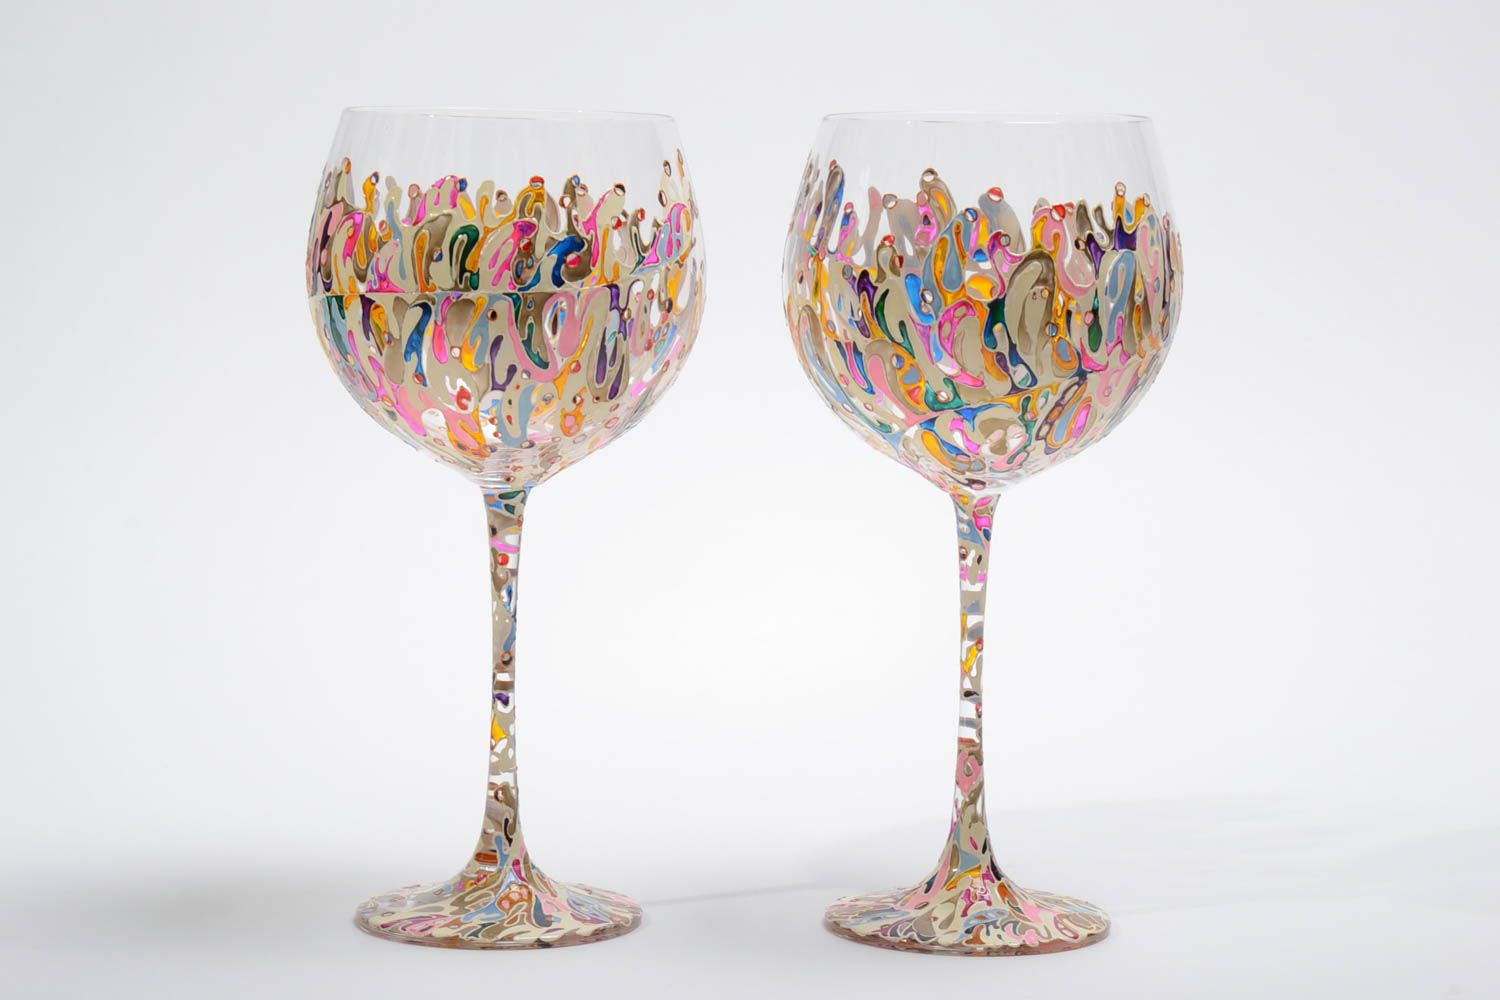 Unique wine glasses handmade 2 colored wine glasses 700 ml wedding gift idea photo 2